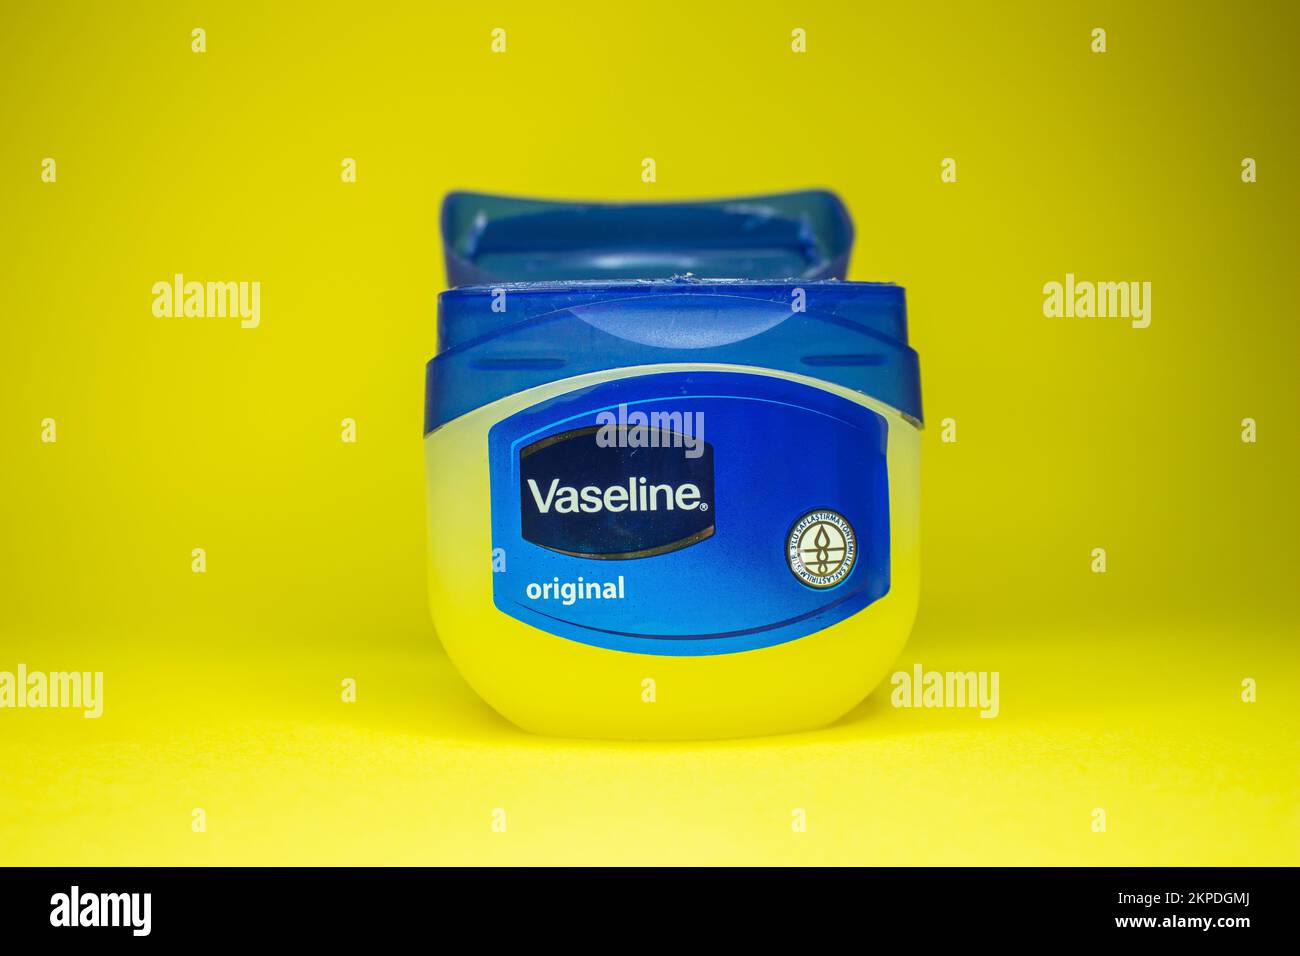 Vaseline-Flasche auf gelbem Hintergrund. Hautpflegemittel Vaseline oder Vaseline. Afjonkarahisar, Türkei - 19. November 2022. Stockfoto